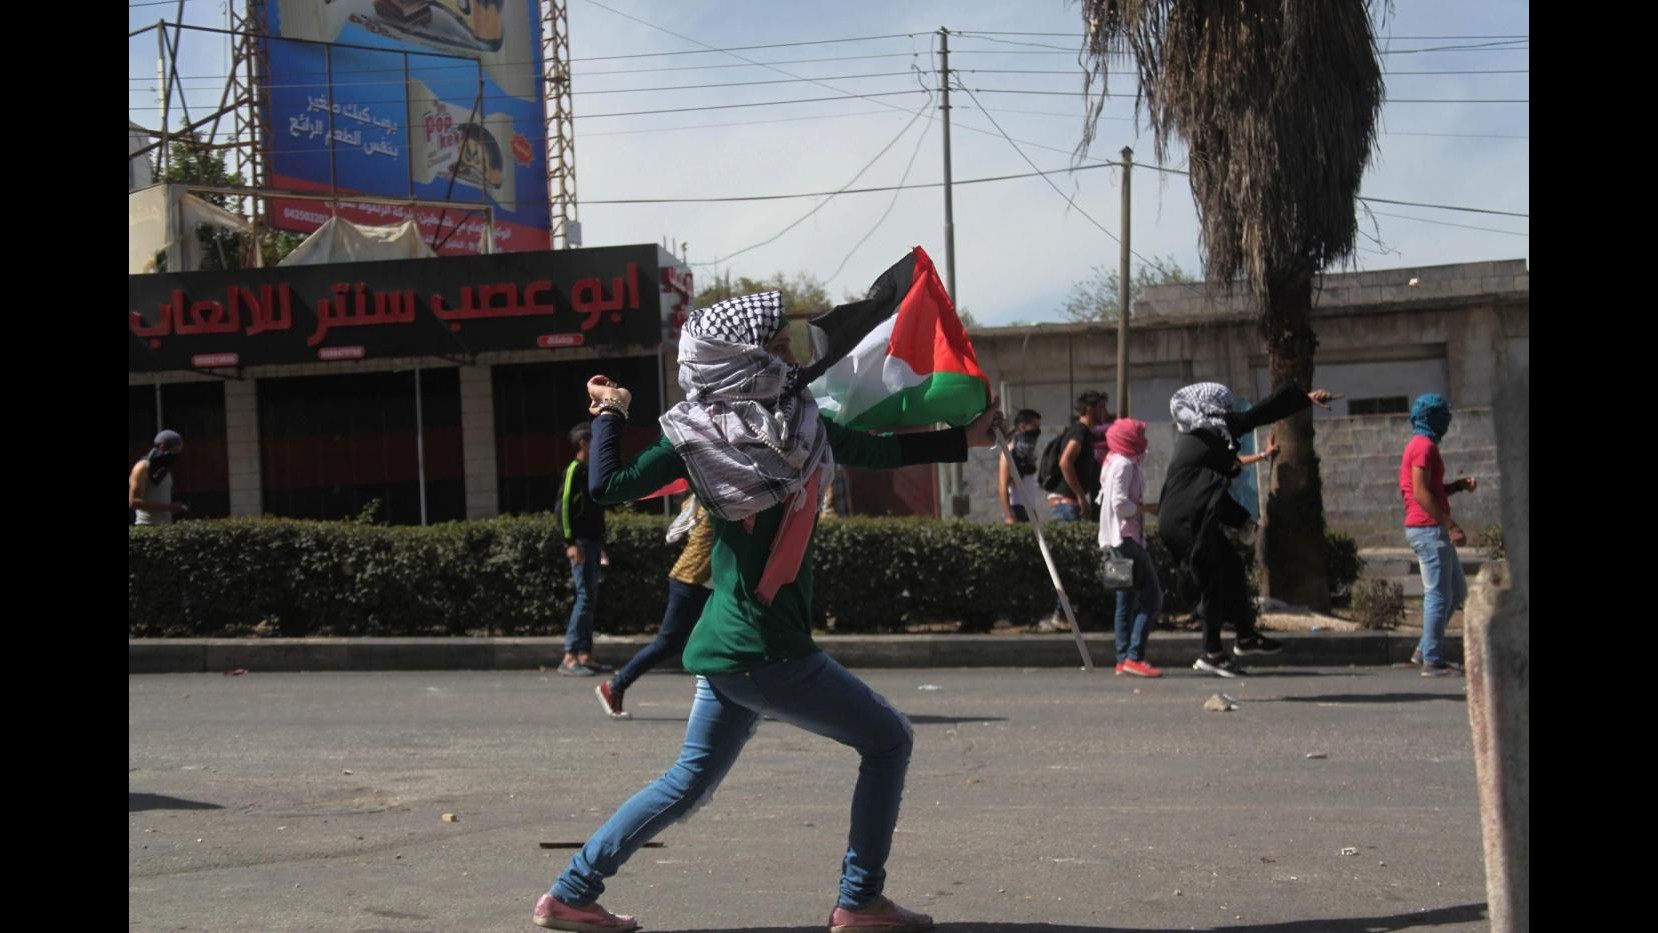 Medioriente, tenta di pugnalare soldato a Hebron: palestinese in fuga